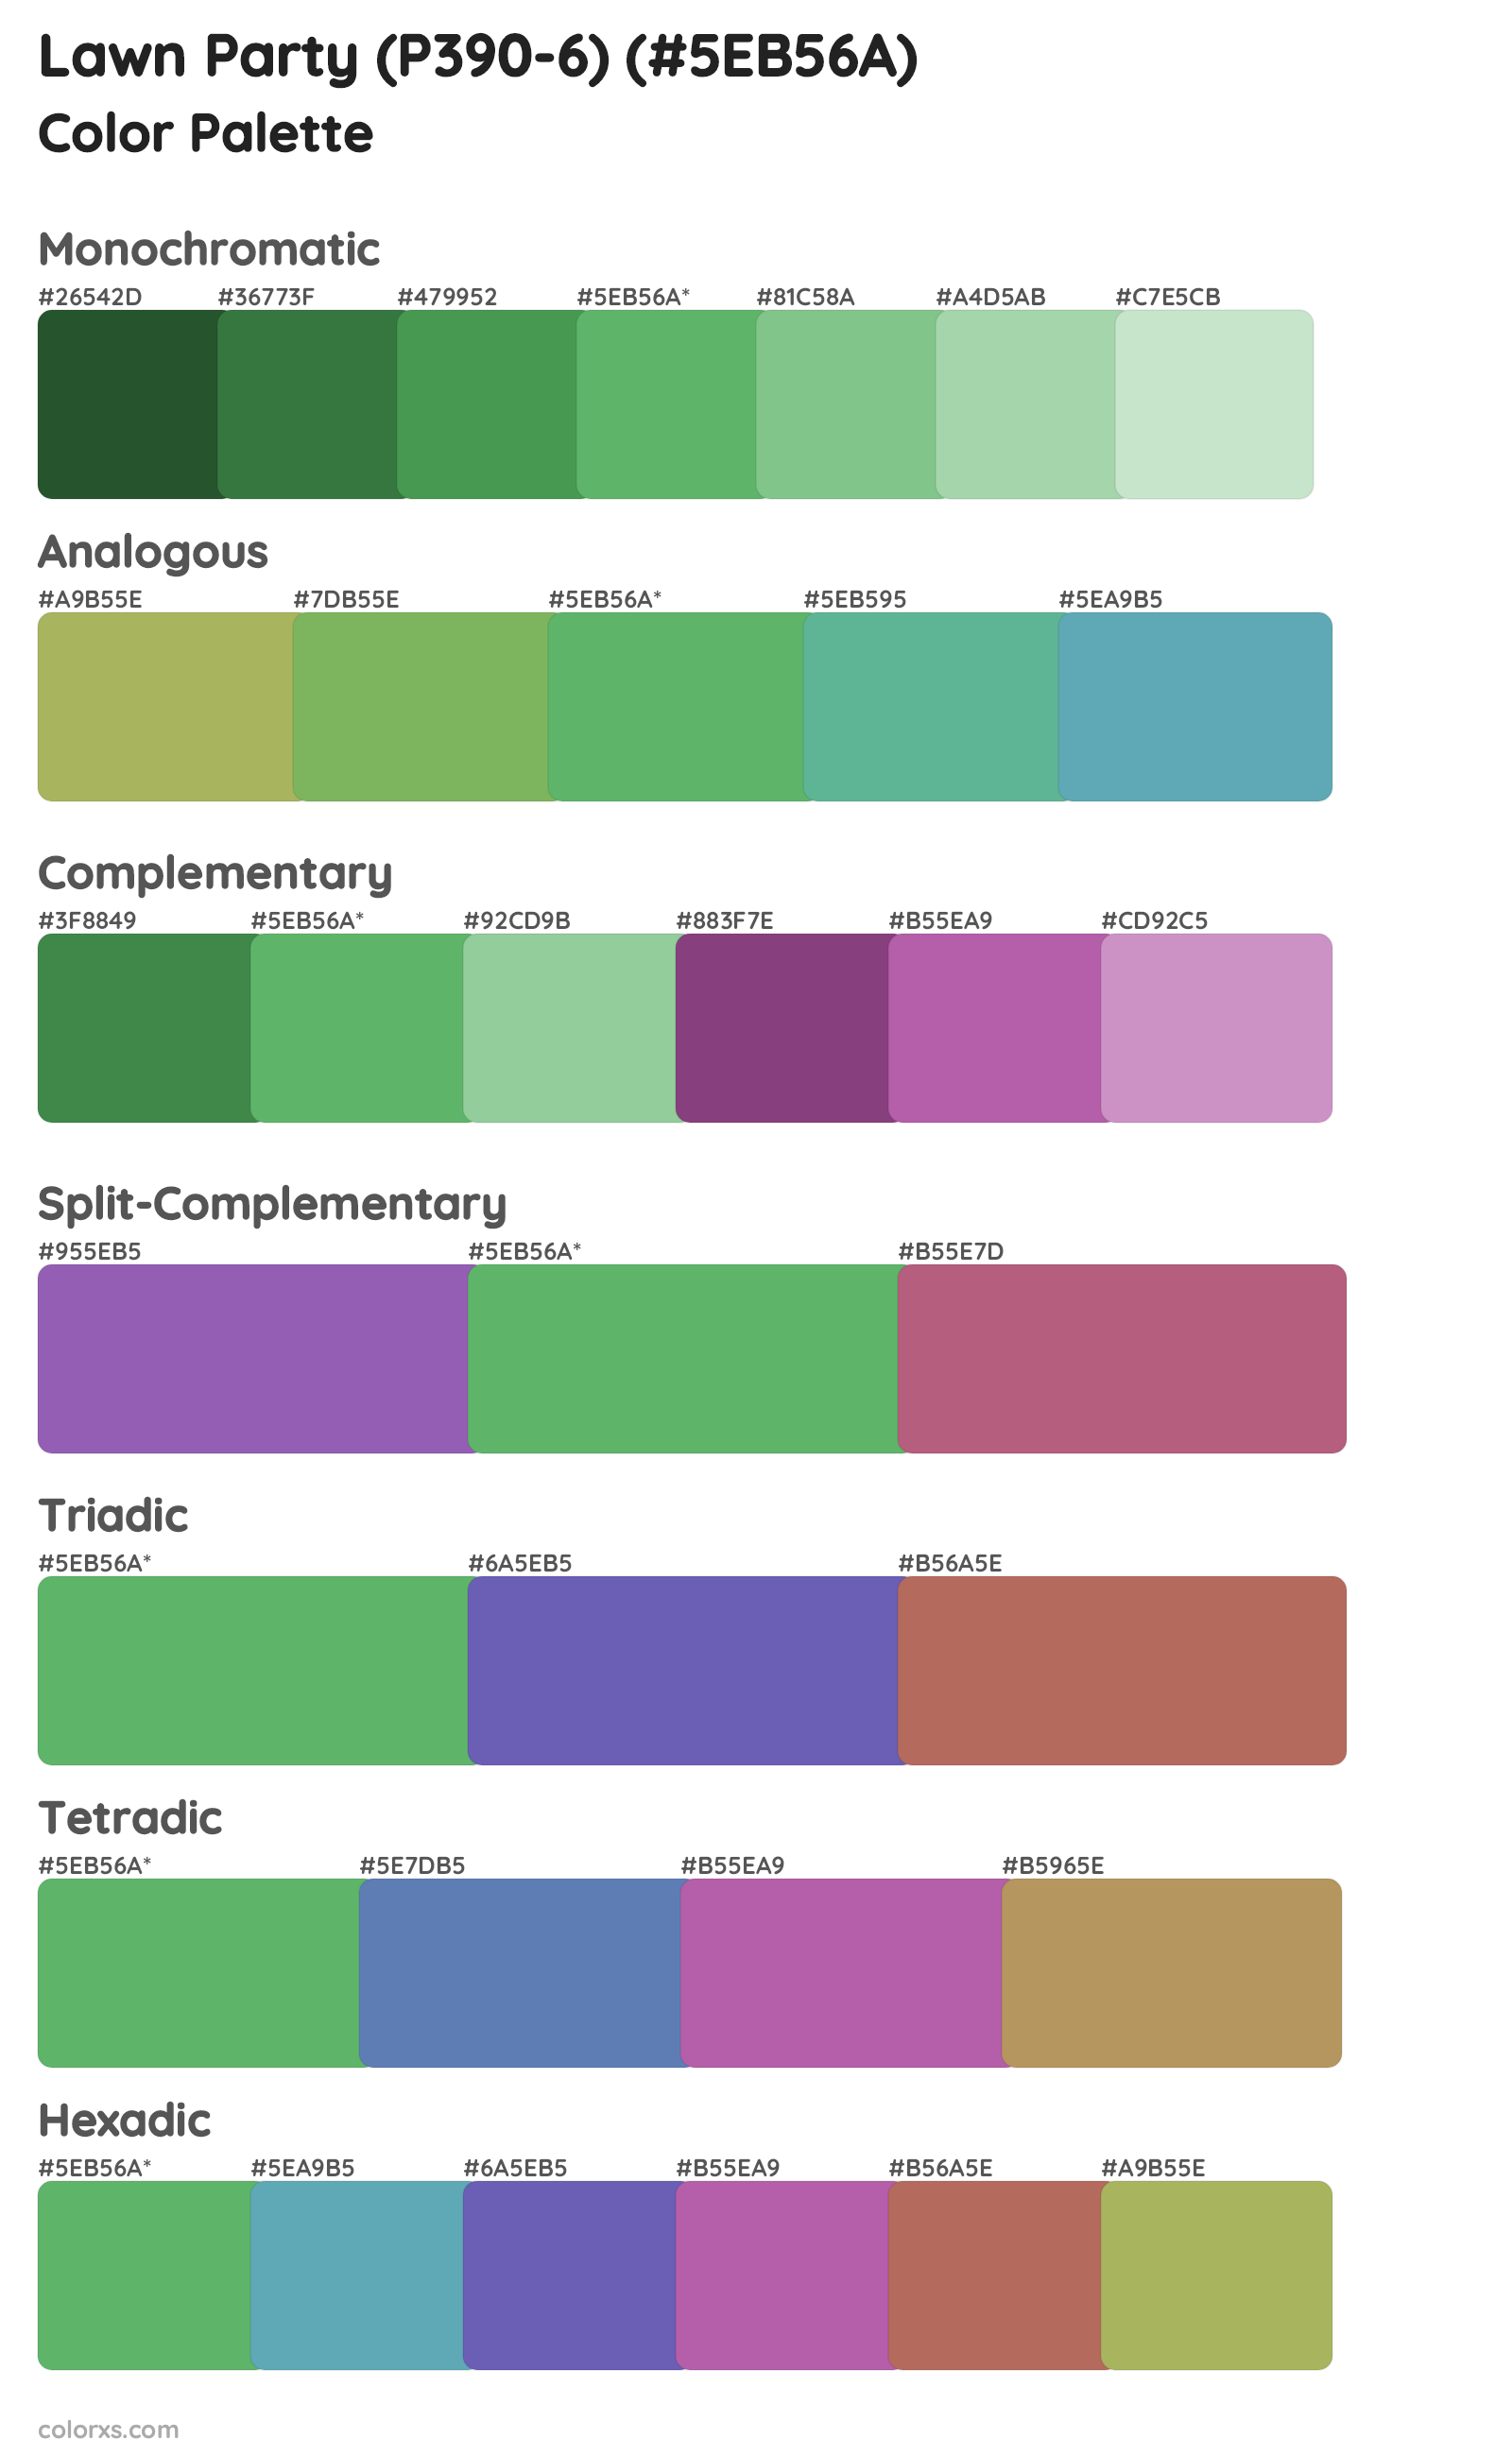 Lawn Party (P390-6) Color Scheme Palettes